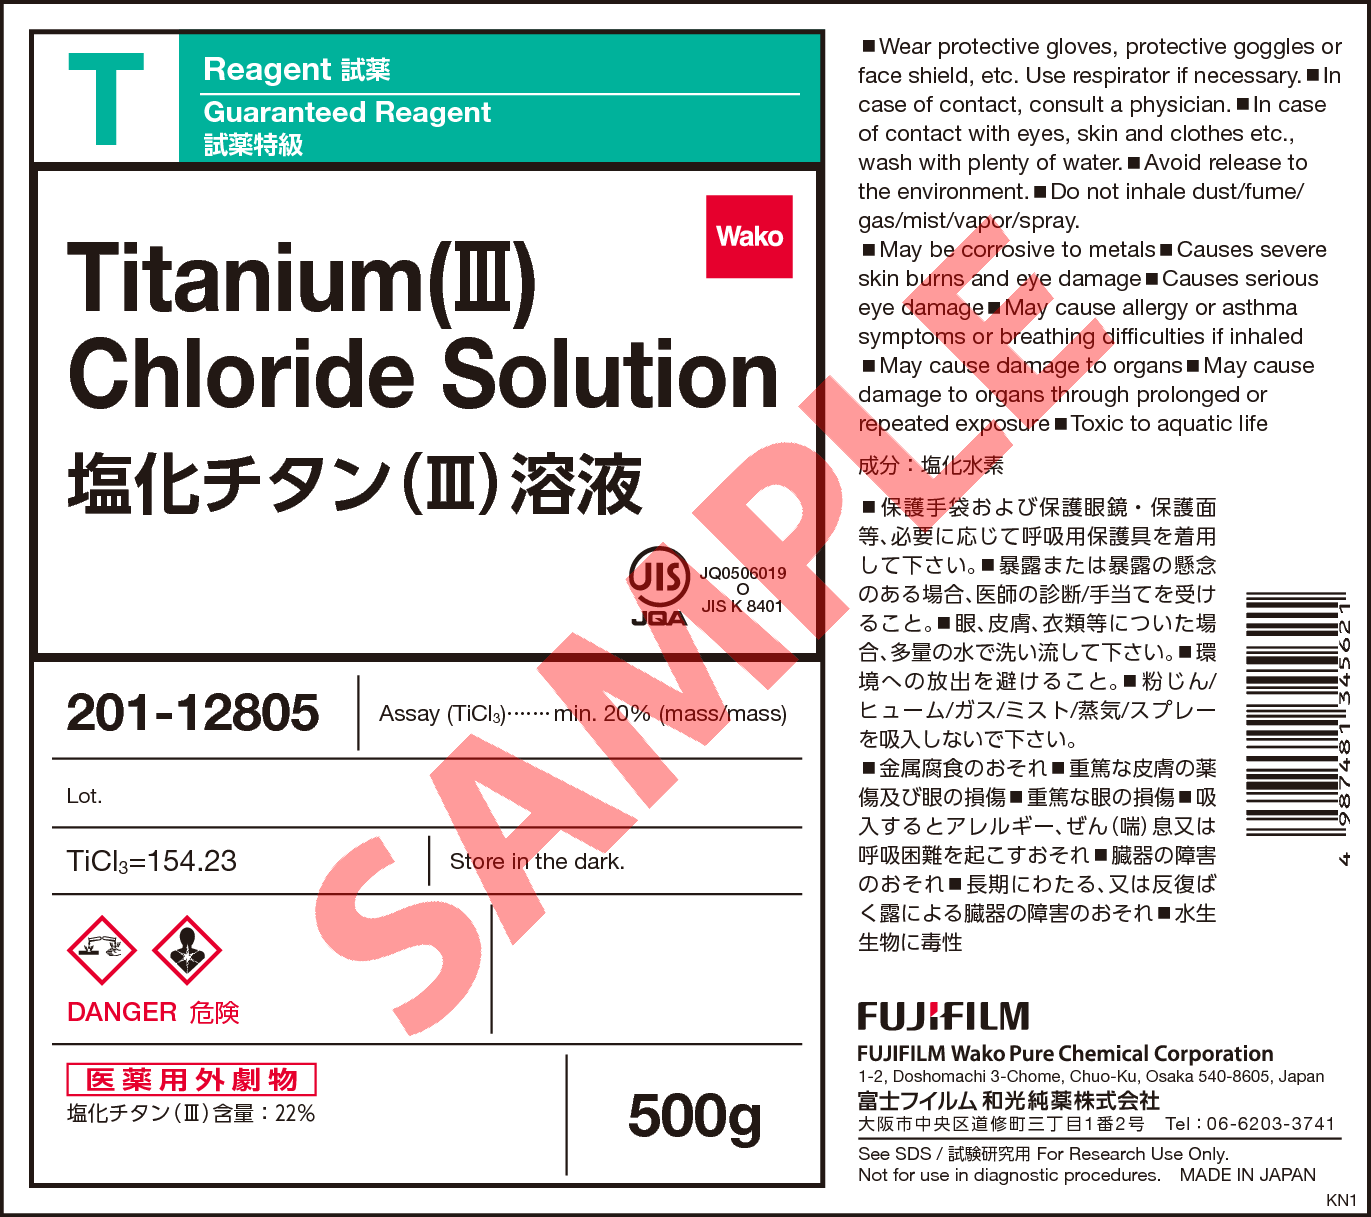 7705 07 9 塩化チタン Iii 溶液 Titanium Iii Chloride Solution 1 詳細情報 常用試薬 ラボウェア 試薬 富士フイルム和光純薬